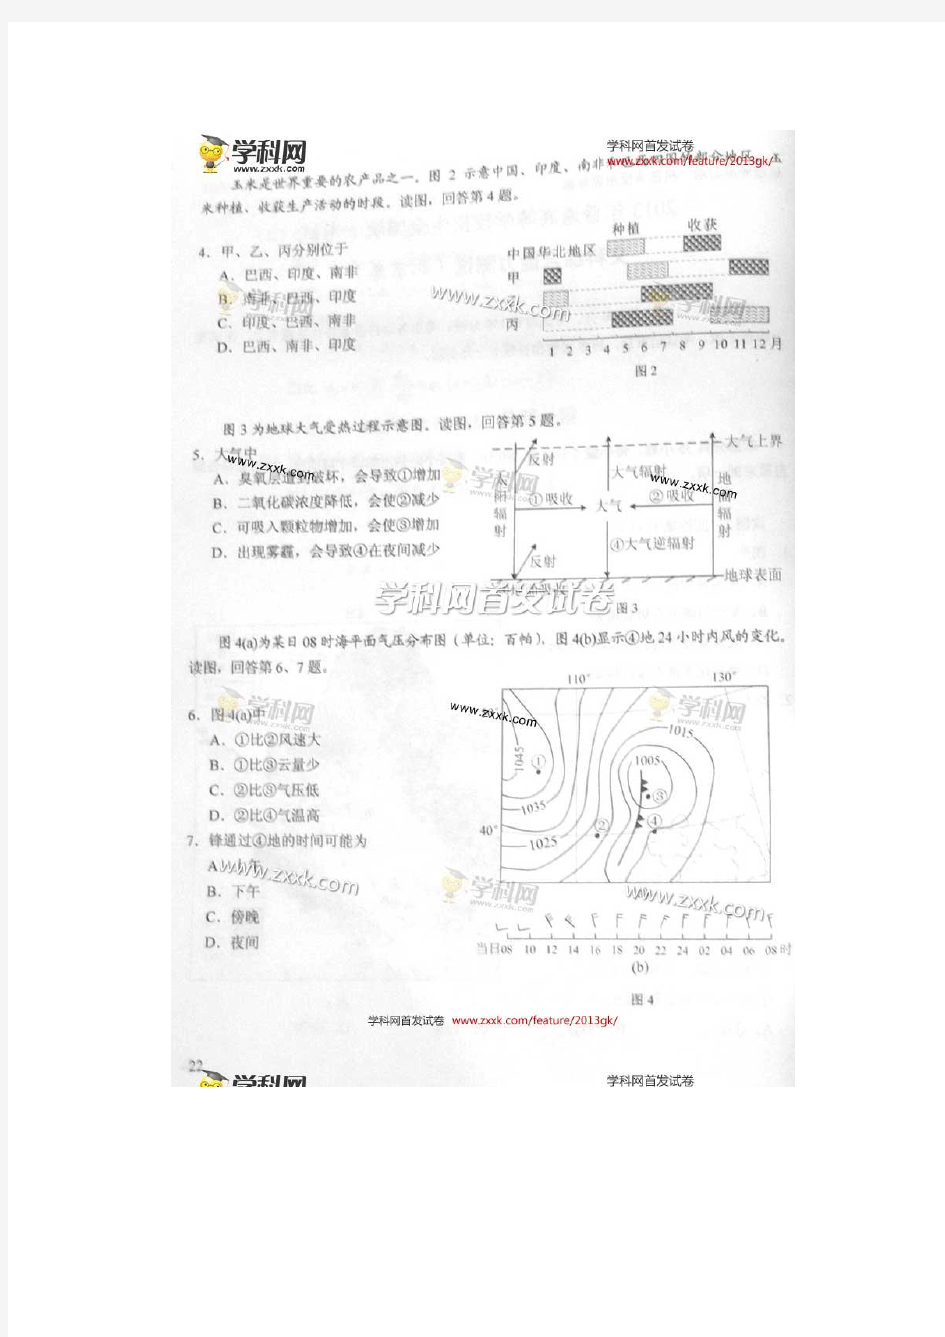 2013年高考真题——文综带答案(北京)